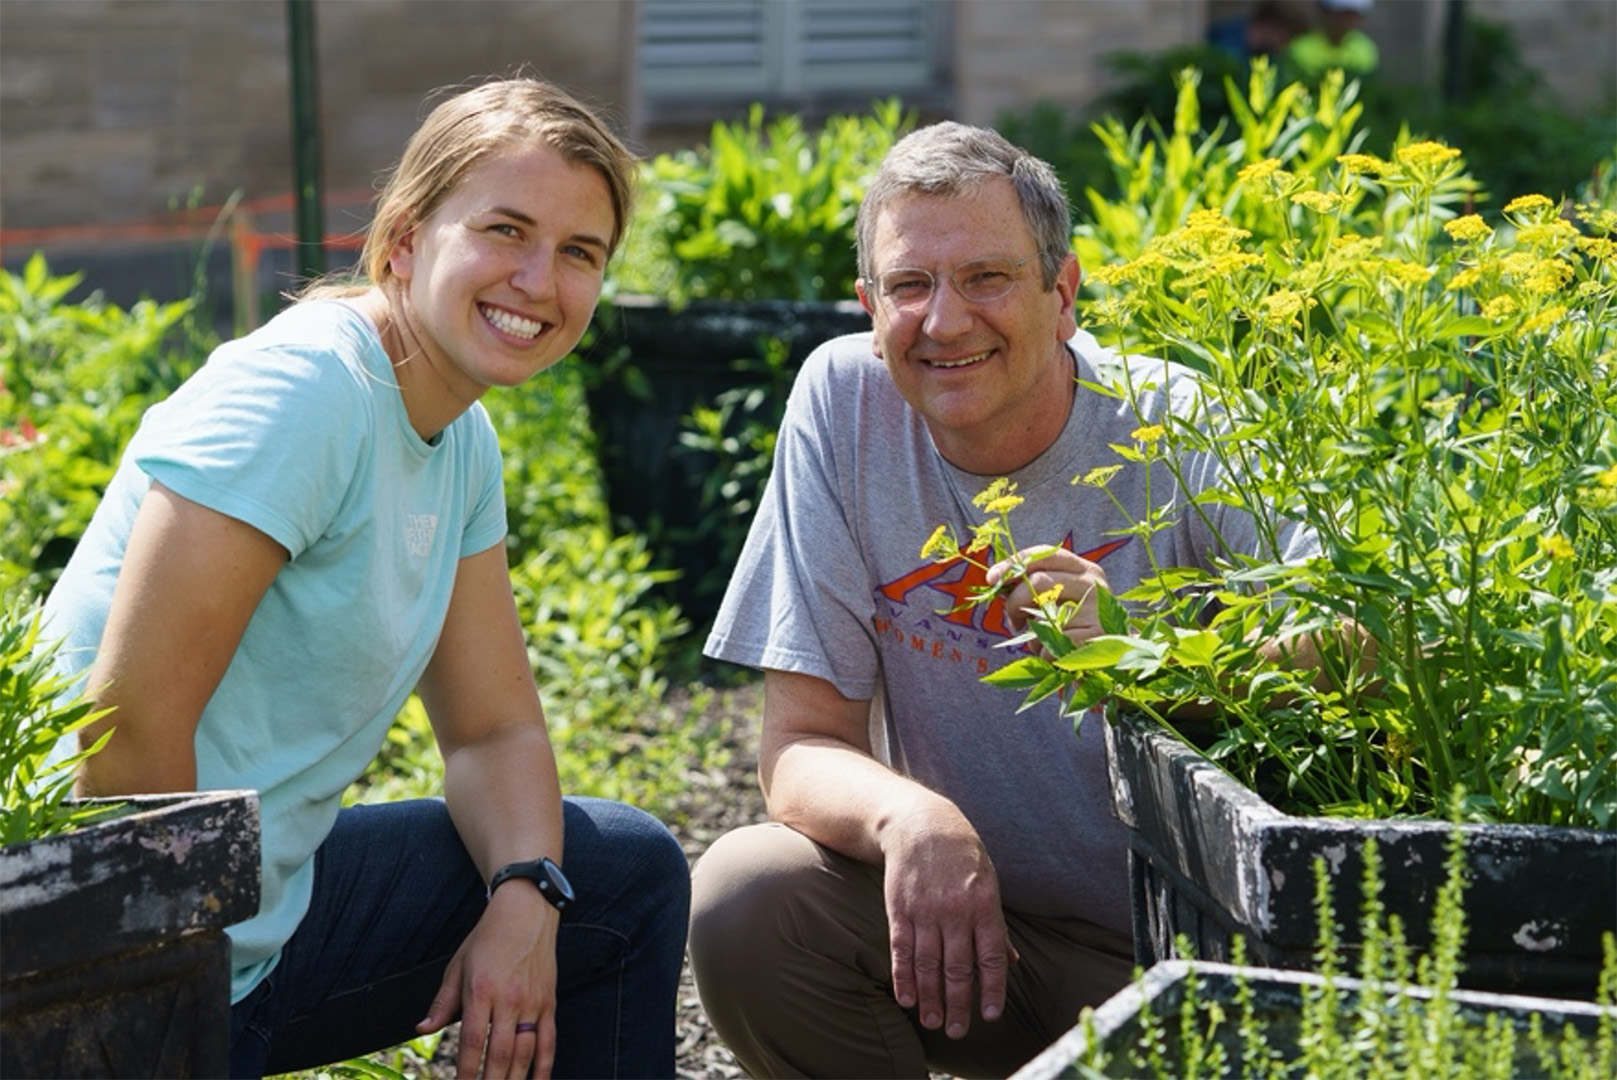 Cris Hochwender with student in garden